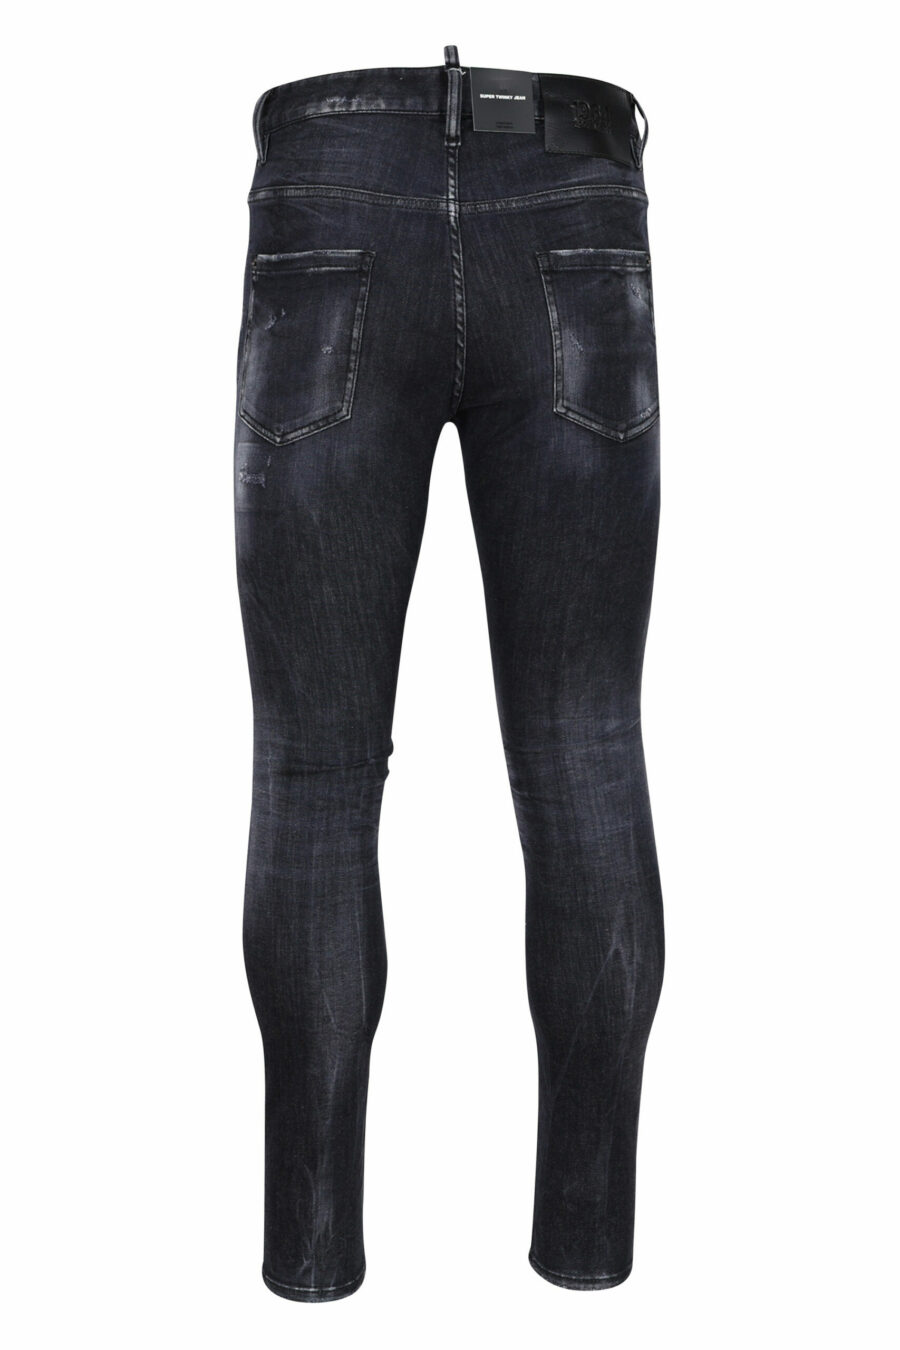 Super twinkey Jeans schwarz semi-getragen und zerrissen - 8054148103088 2 skaliert